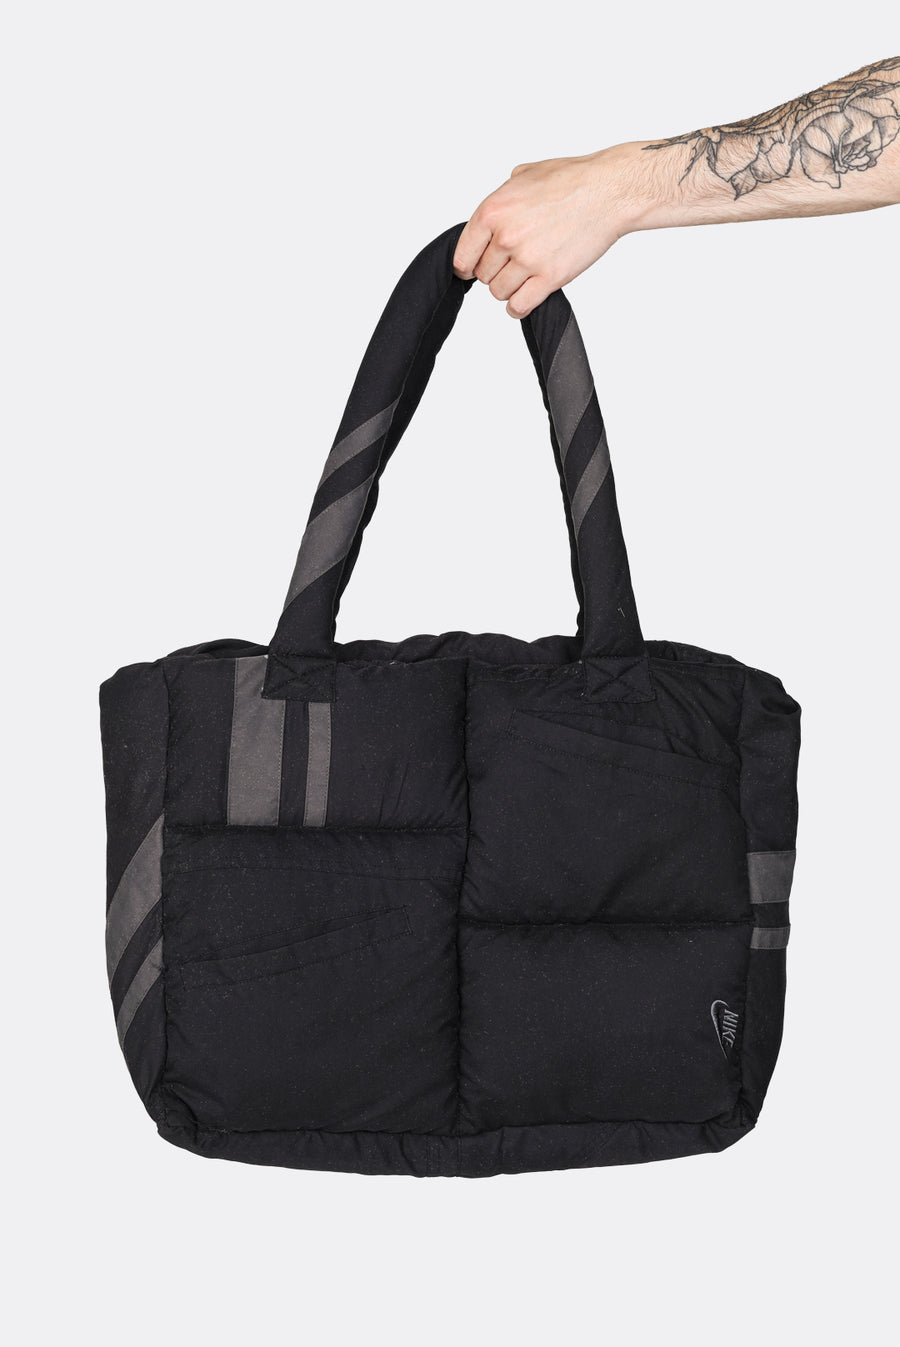 Frankie Collective Rework Nike Handbag NWOT